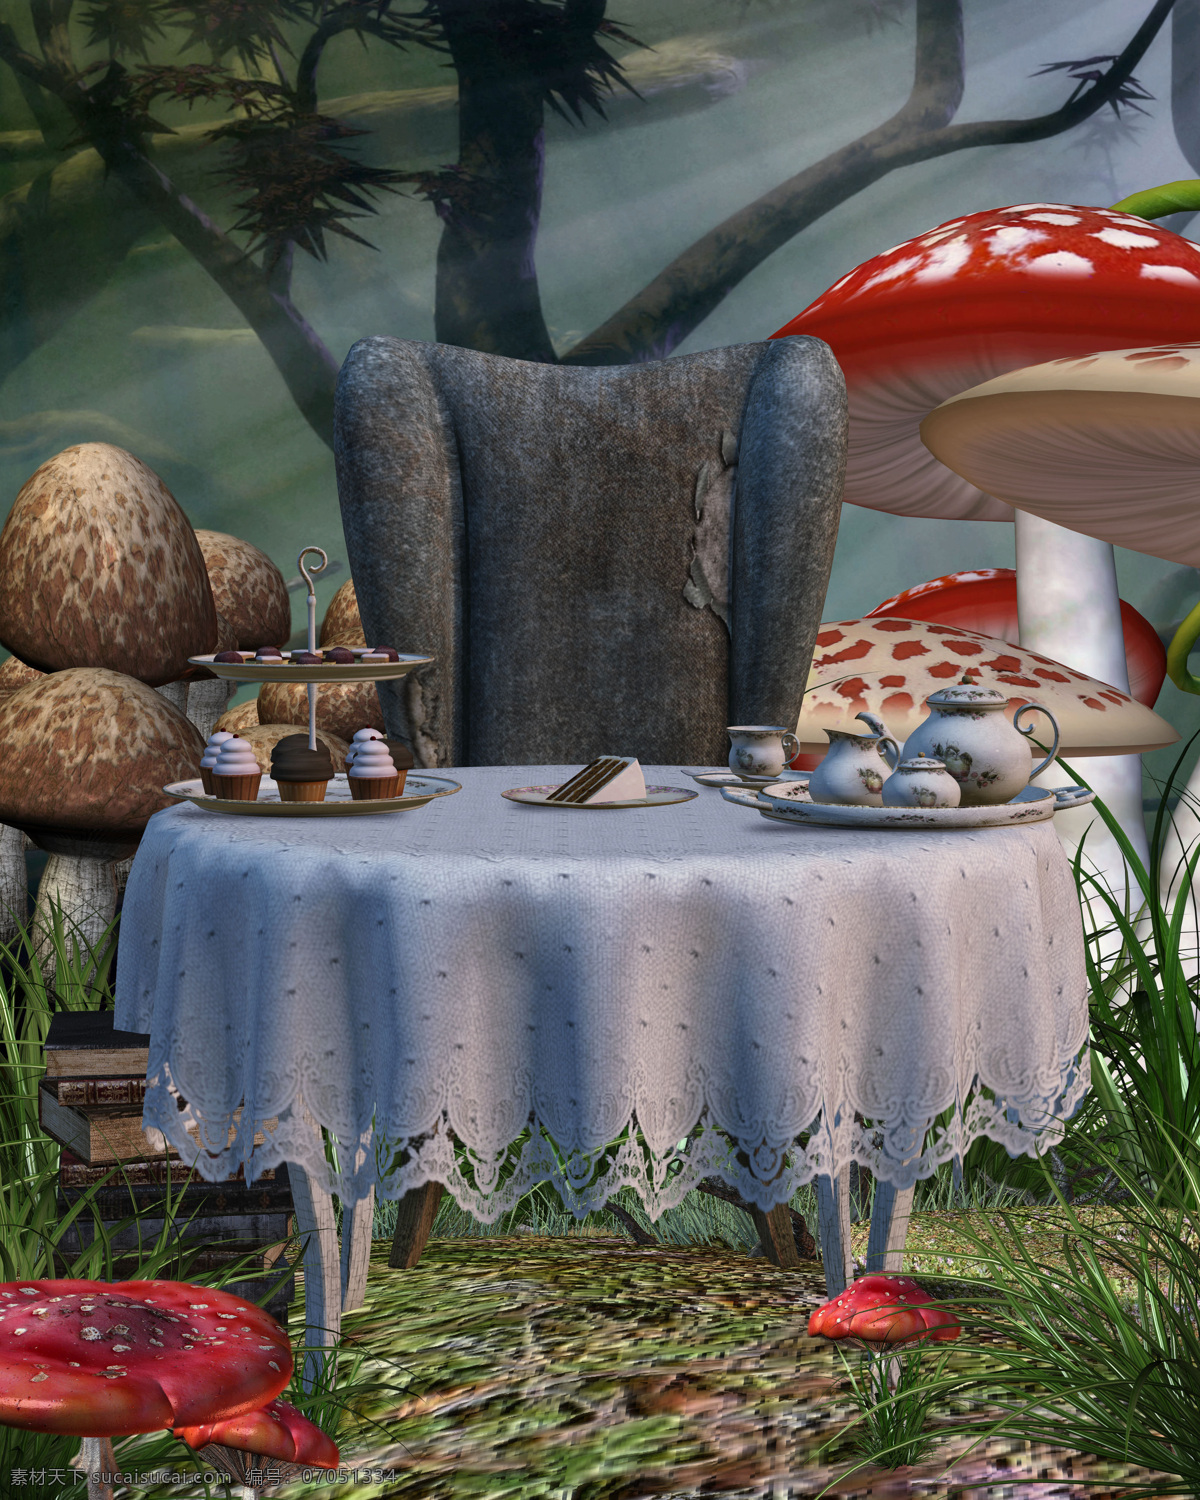 卡通漫画 背景 素材图片 桌子 椅子 蘑菇 食物 草地 大树 卡通背景 植物 自然风光 休闲旅游 景区 景观 山水风景 风景图片